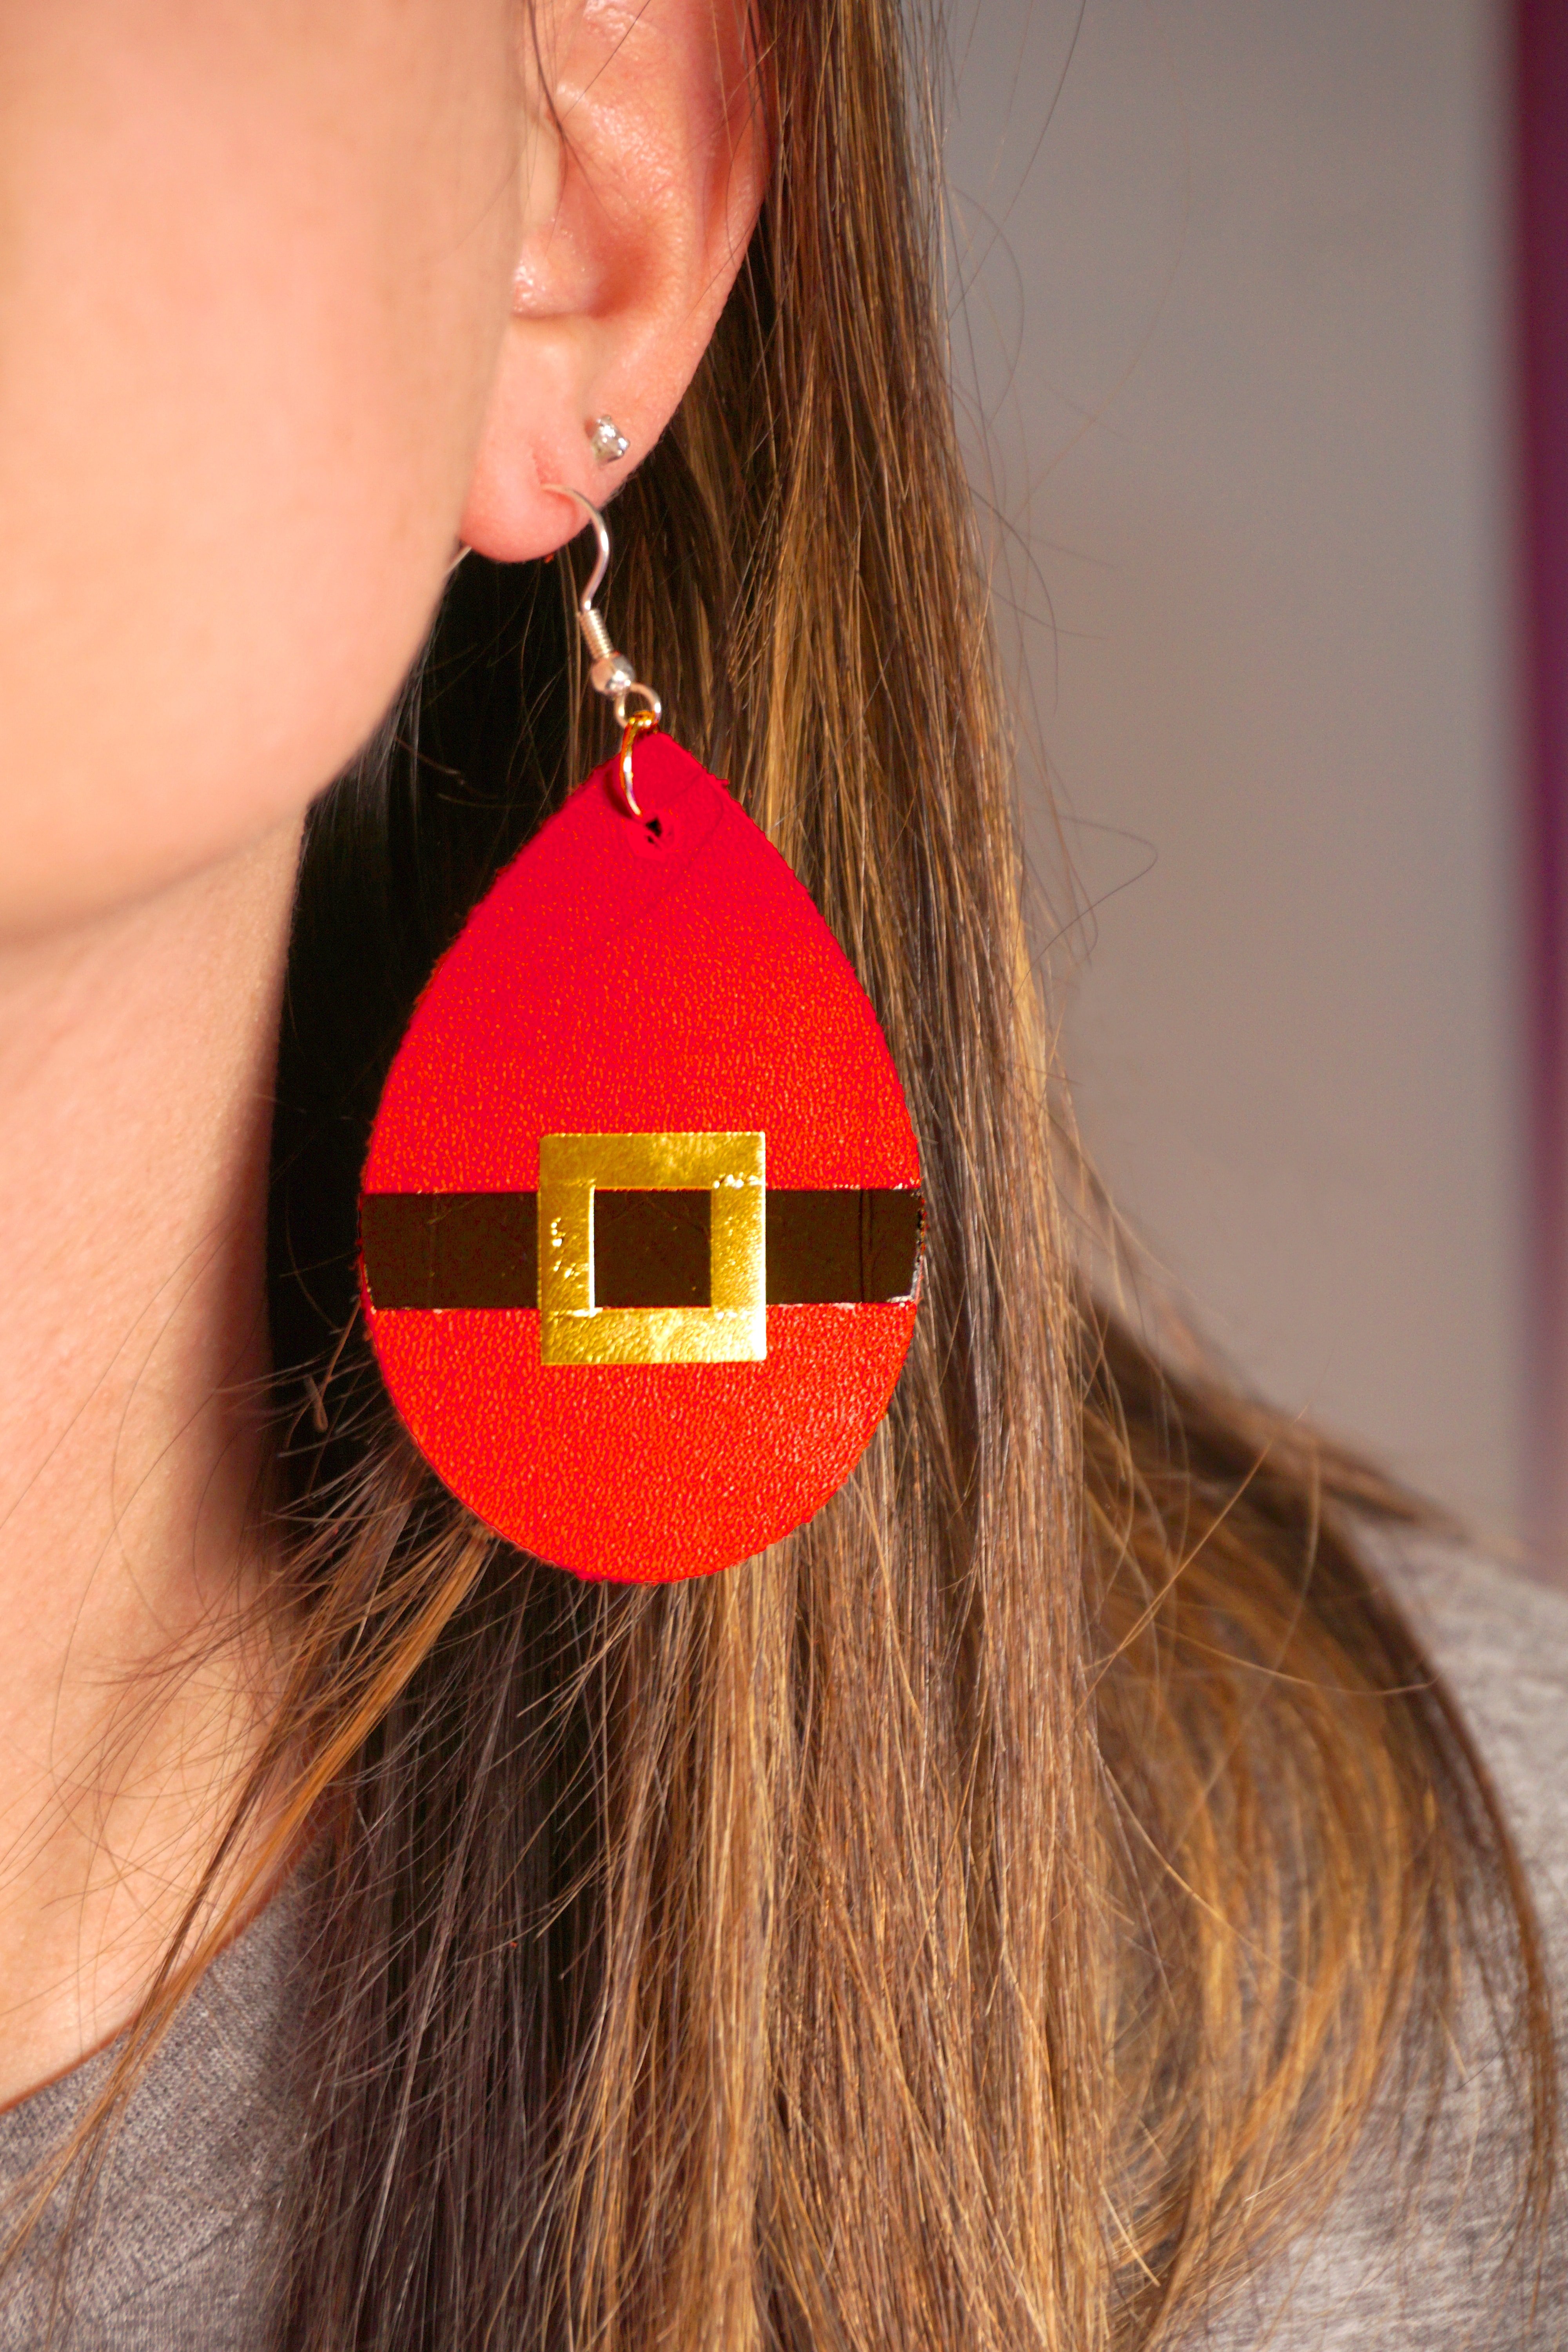 santa belt earring worn by woman